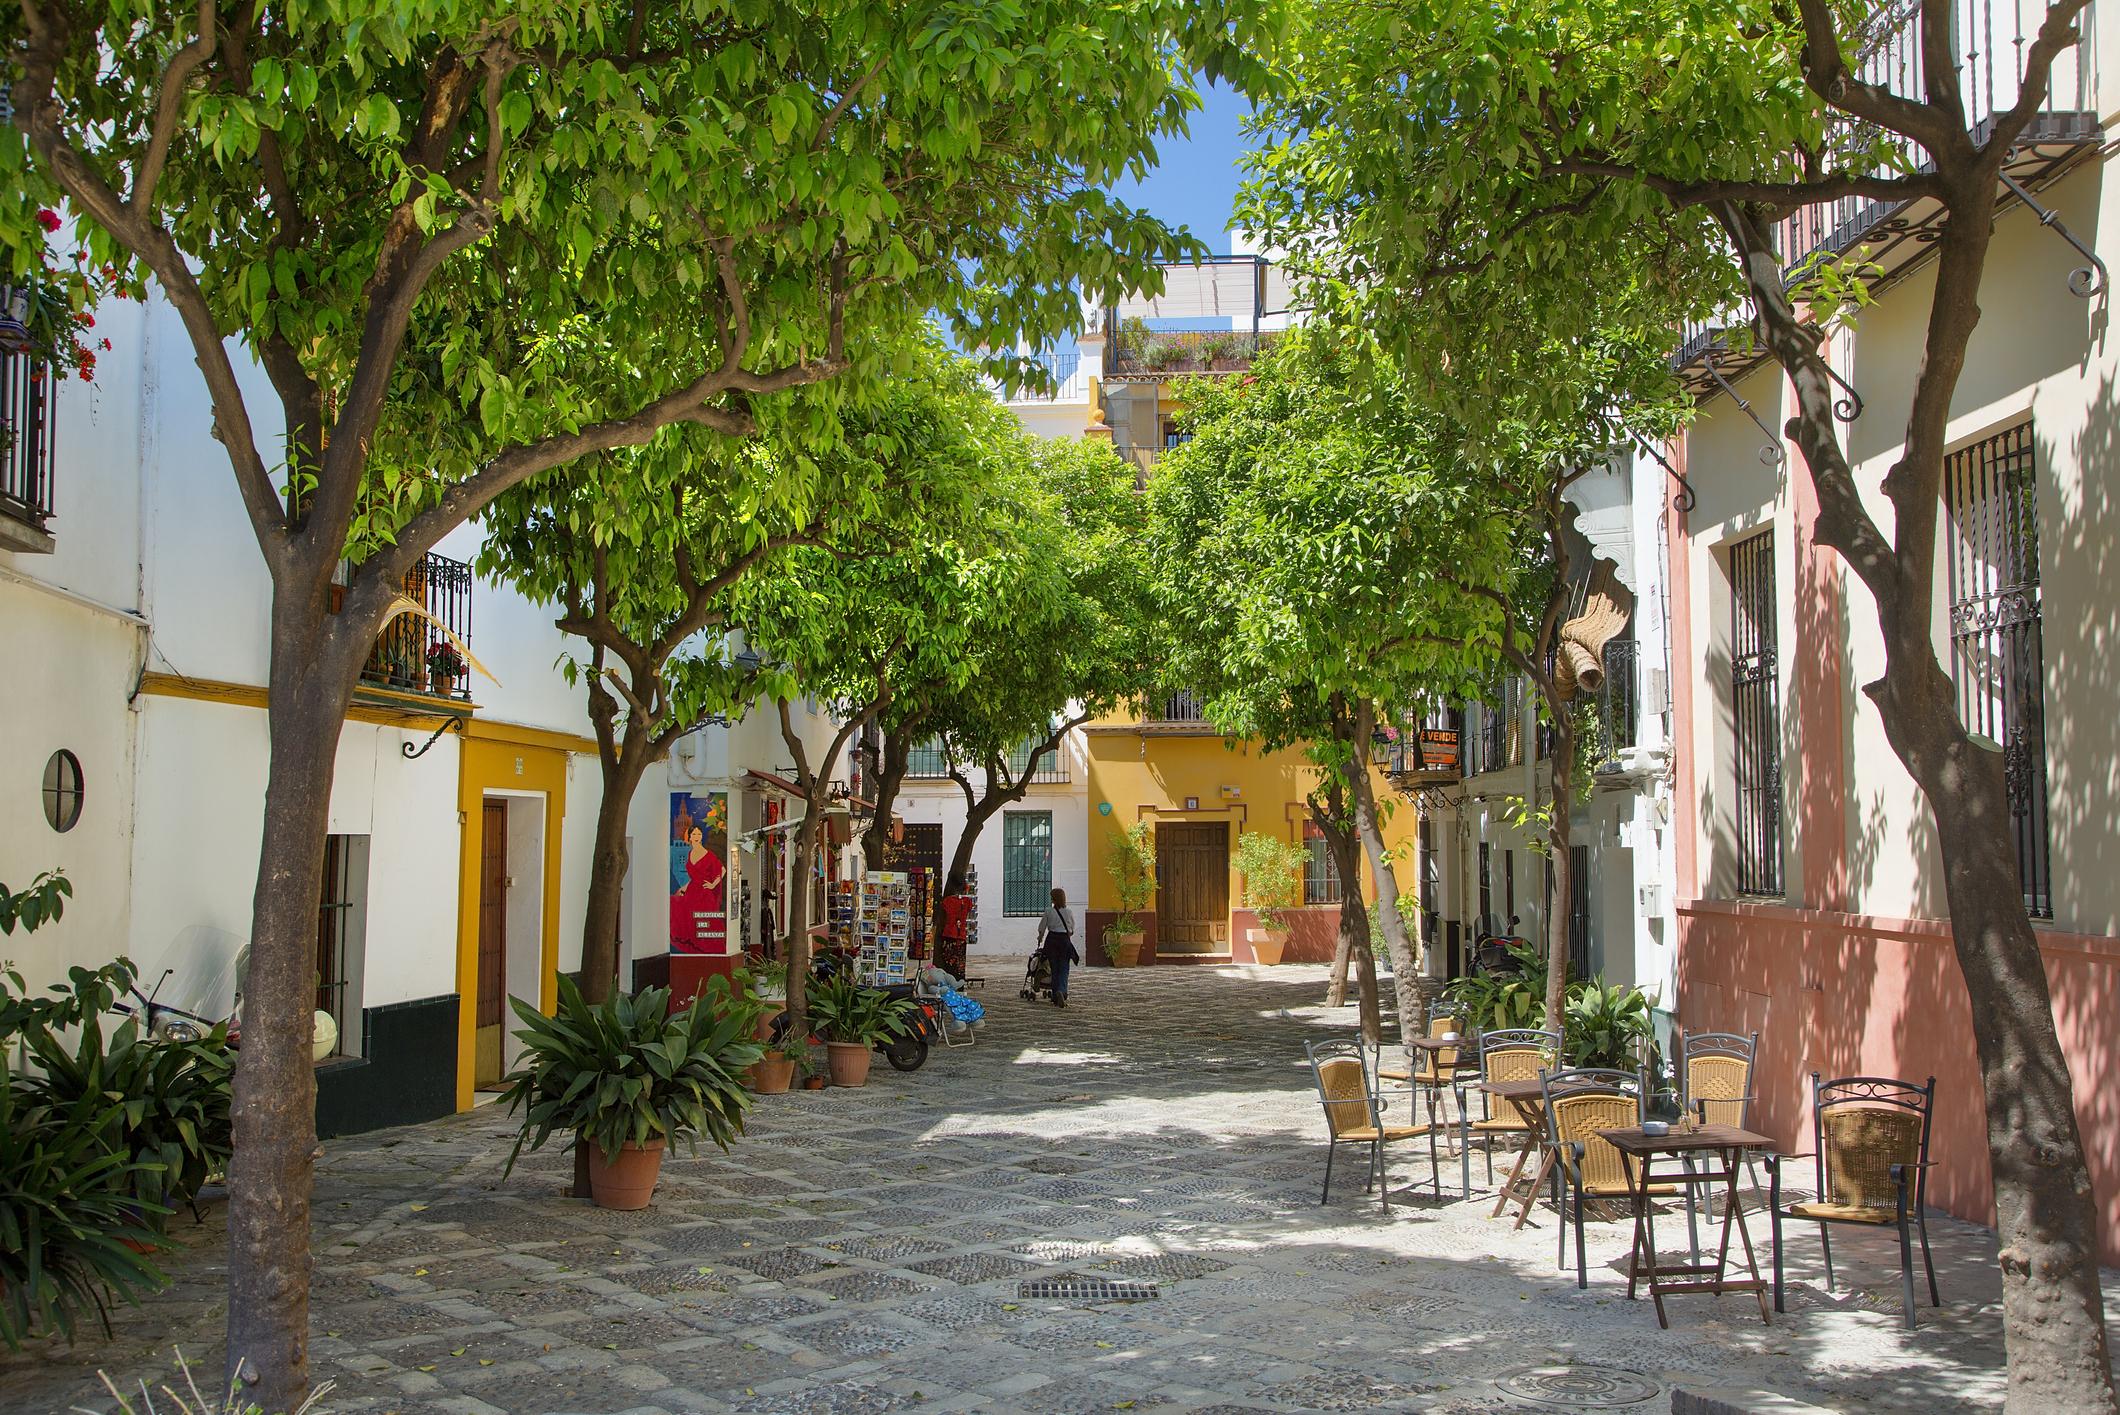 Seville, Santa Cruz